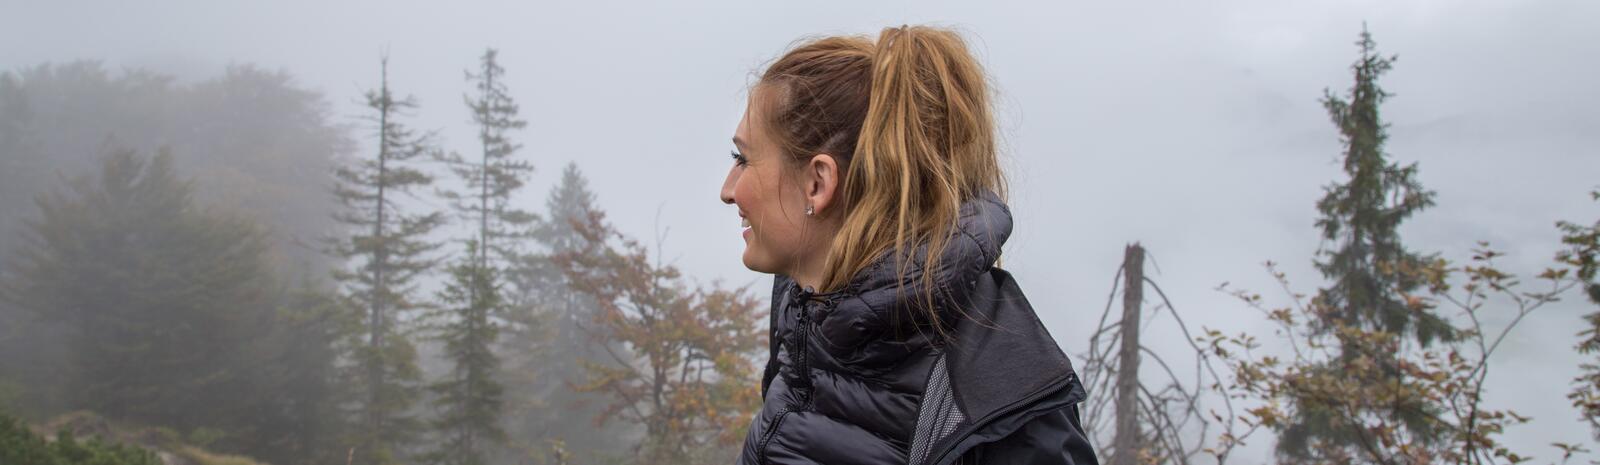 Johanna enjoying the rain | © Best Mountain Artists